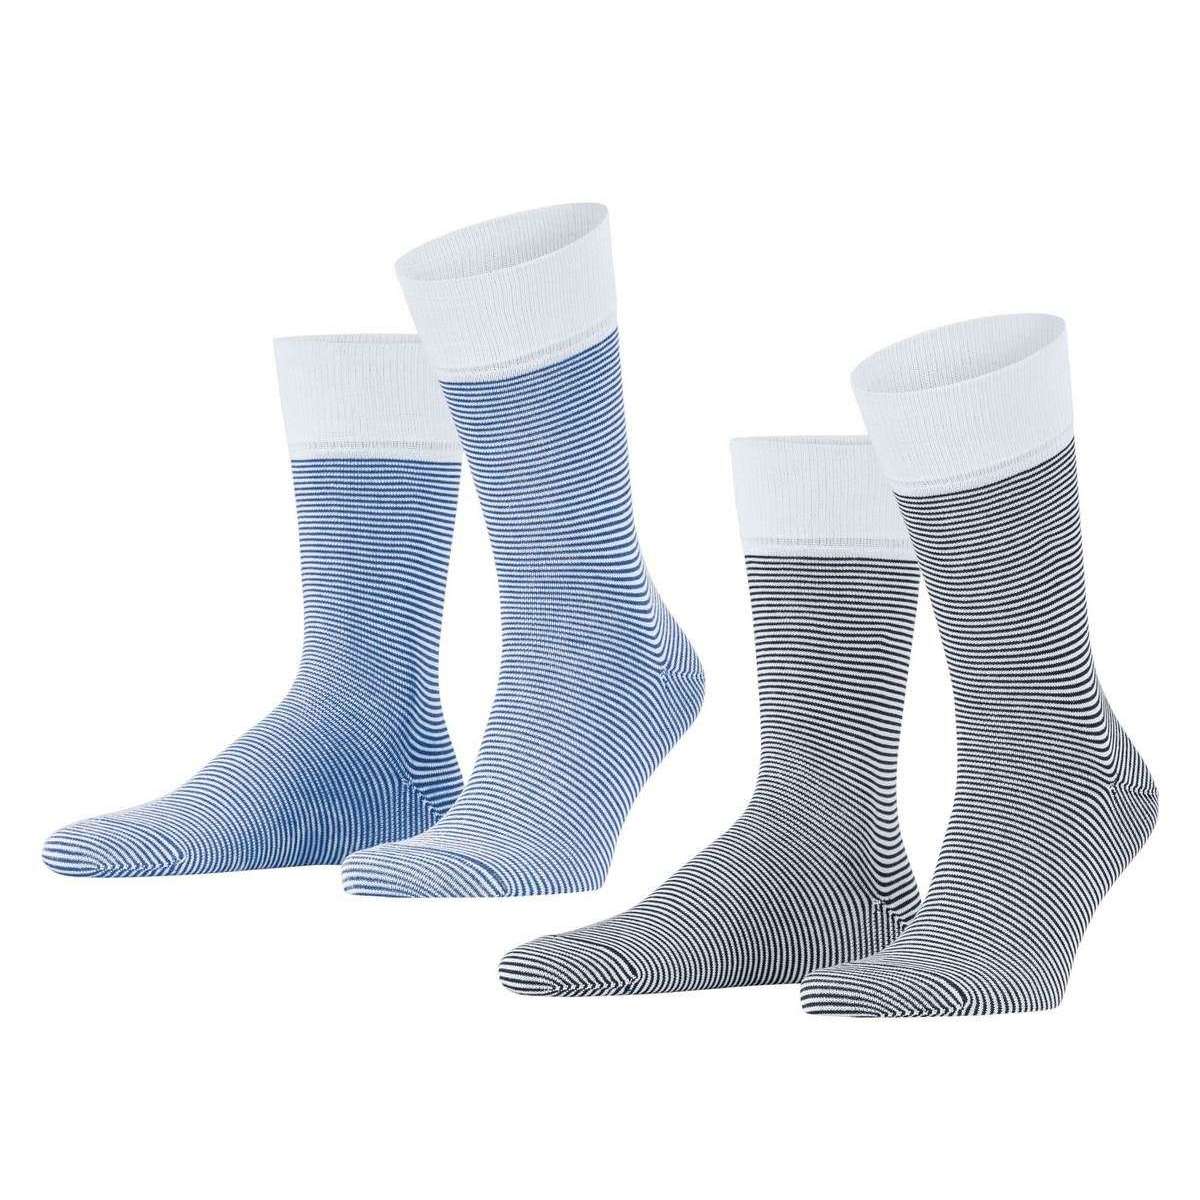 Esprit Allover Stripe 2 Pack Socks - Blue Mix